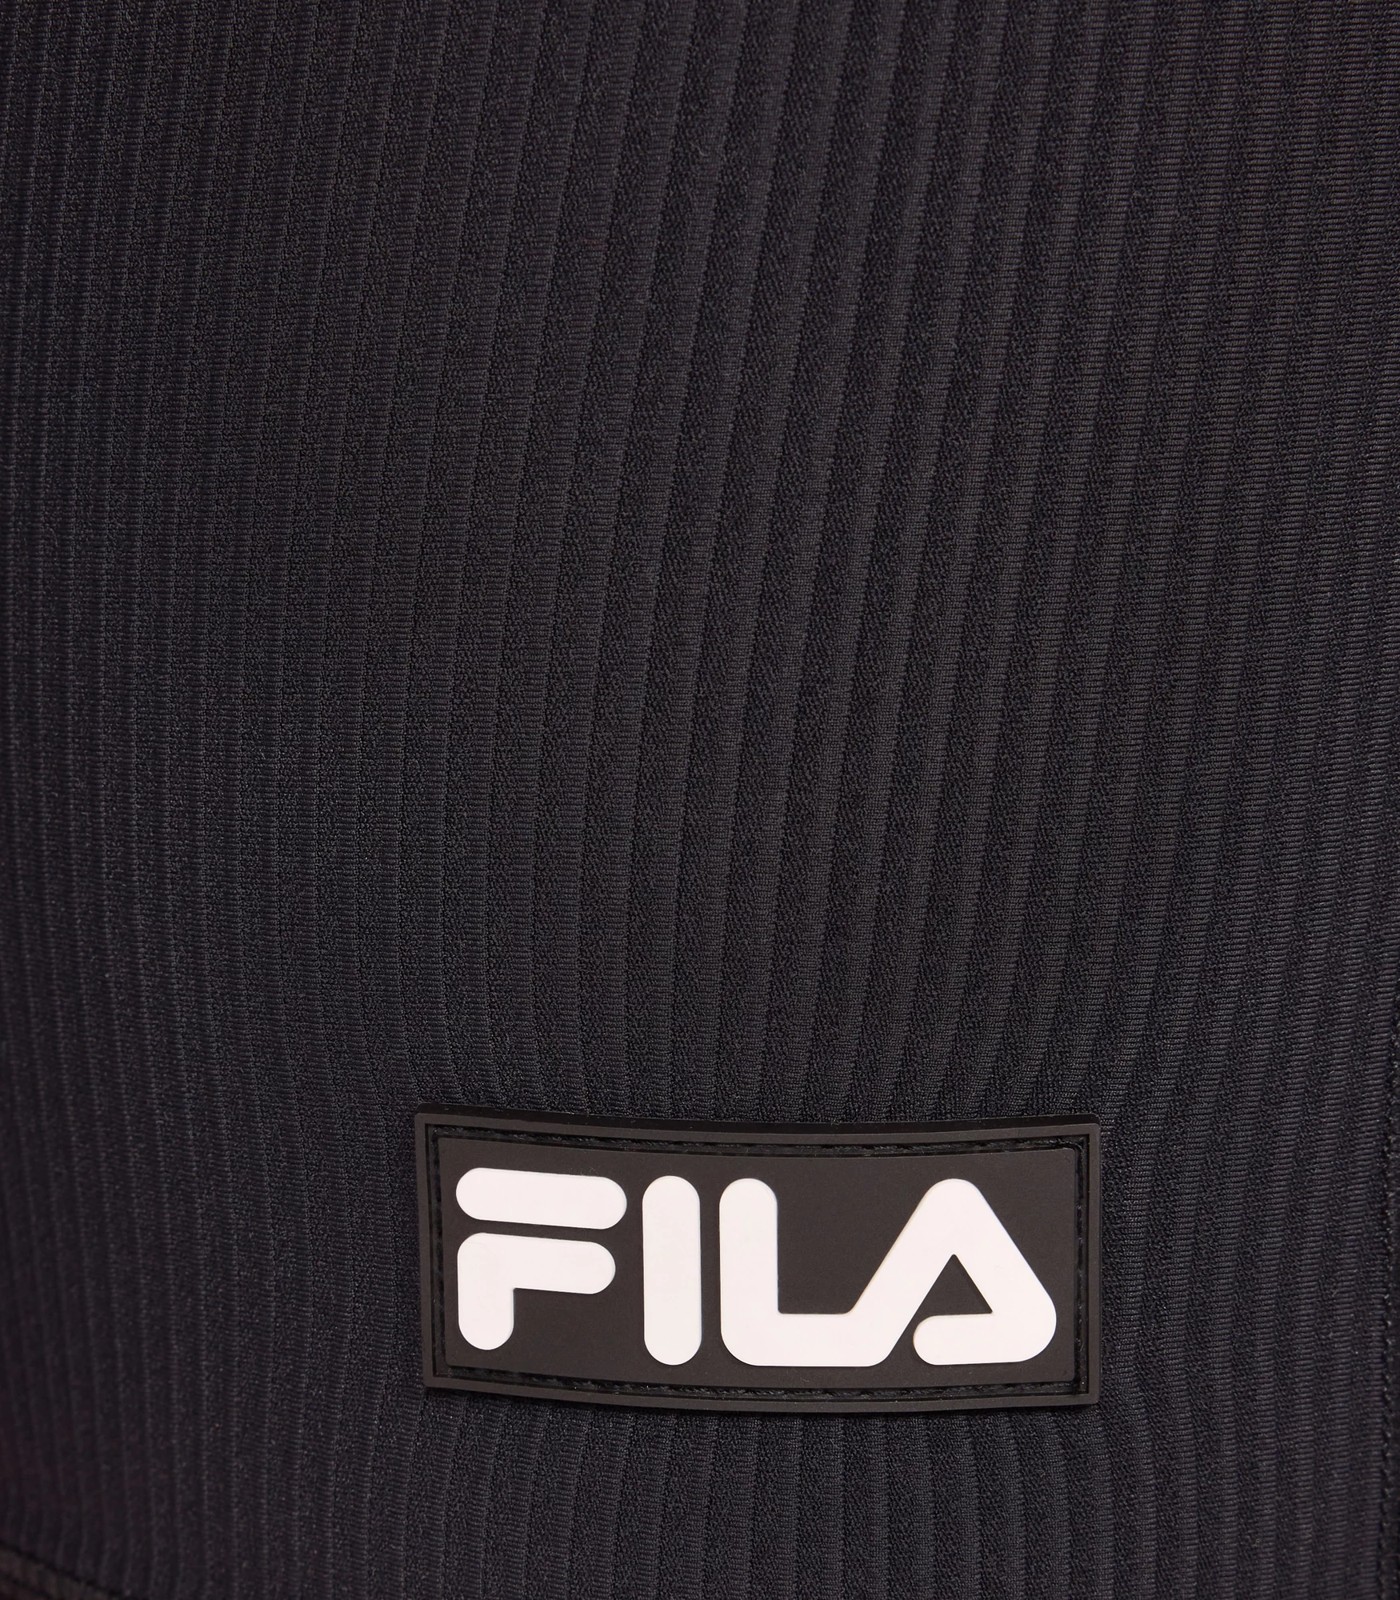 Fila Bike Shorts | Target Australia